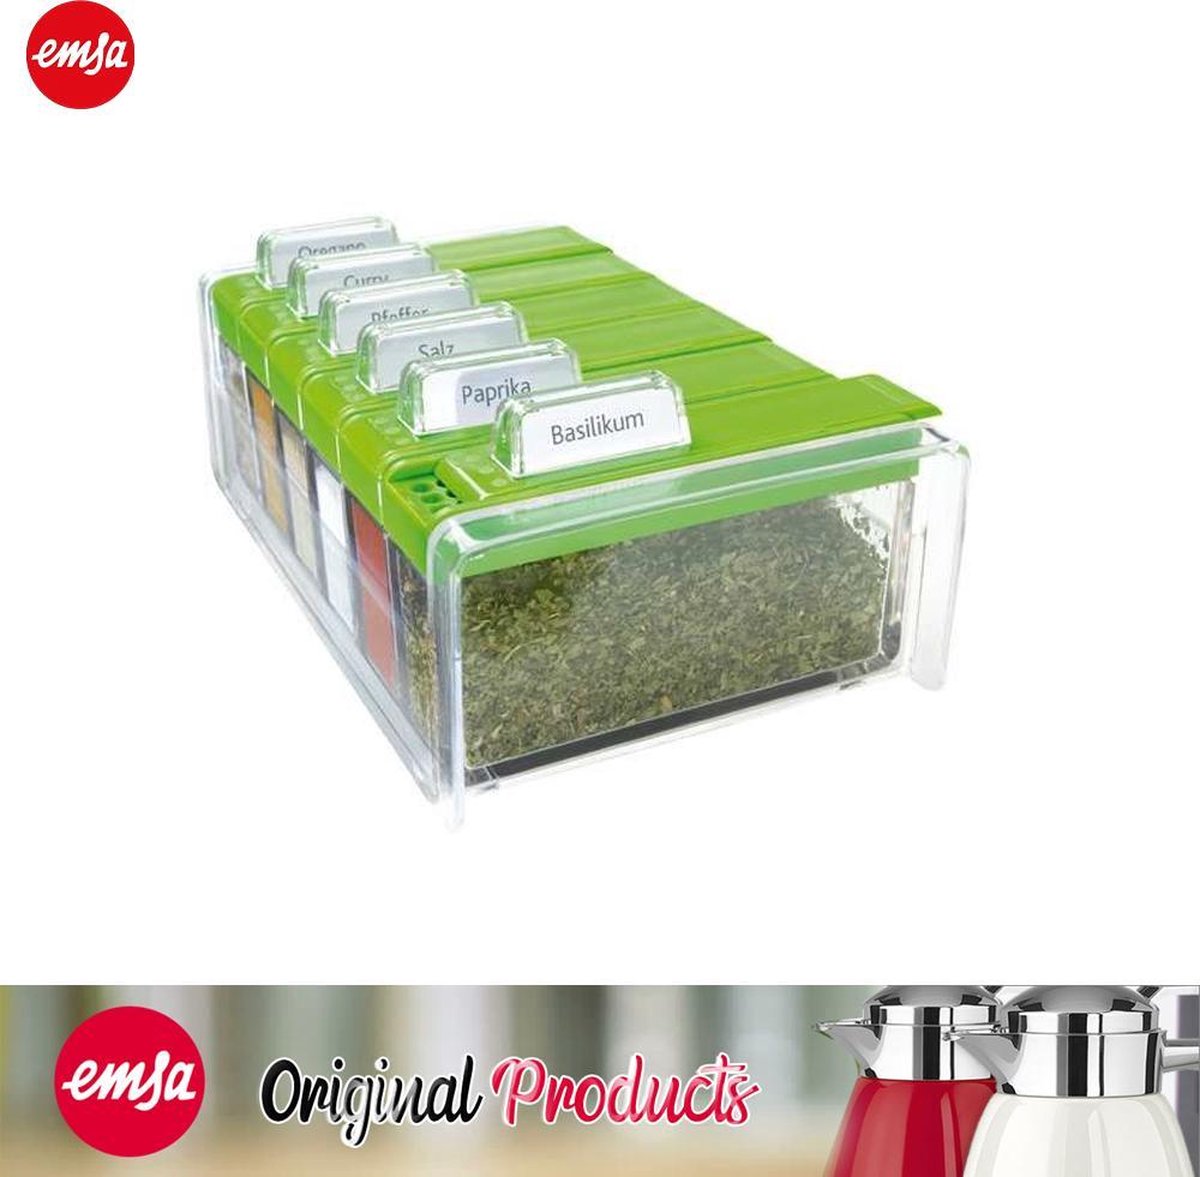 Boîte système de cartes Emsa SPICE BOX pour épices avec 6 herbes.  transparent / vert | bol.com